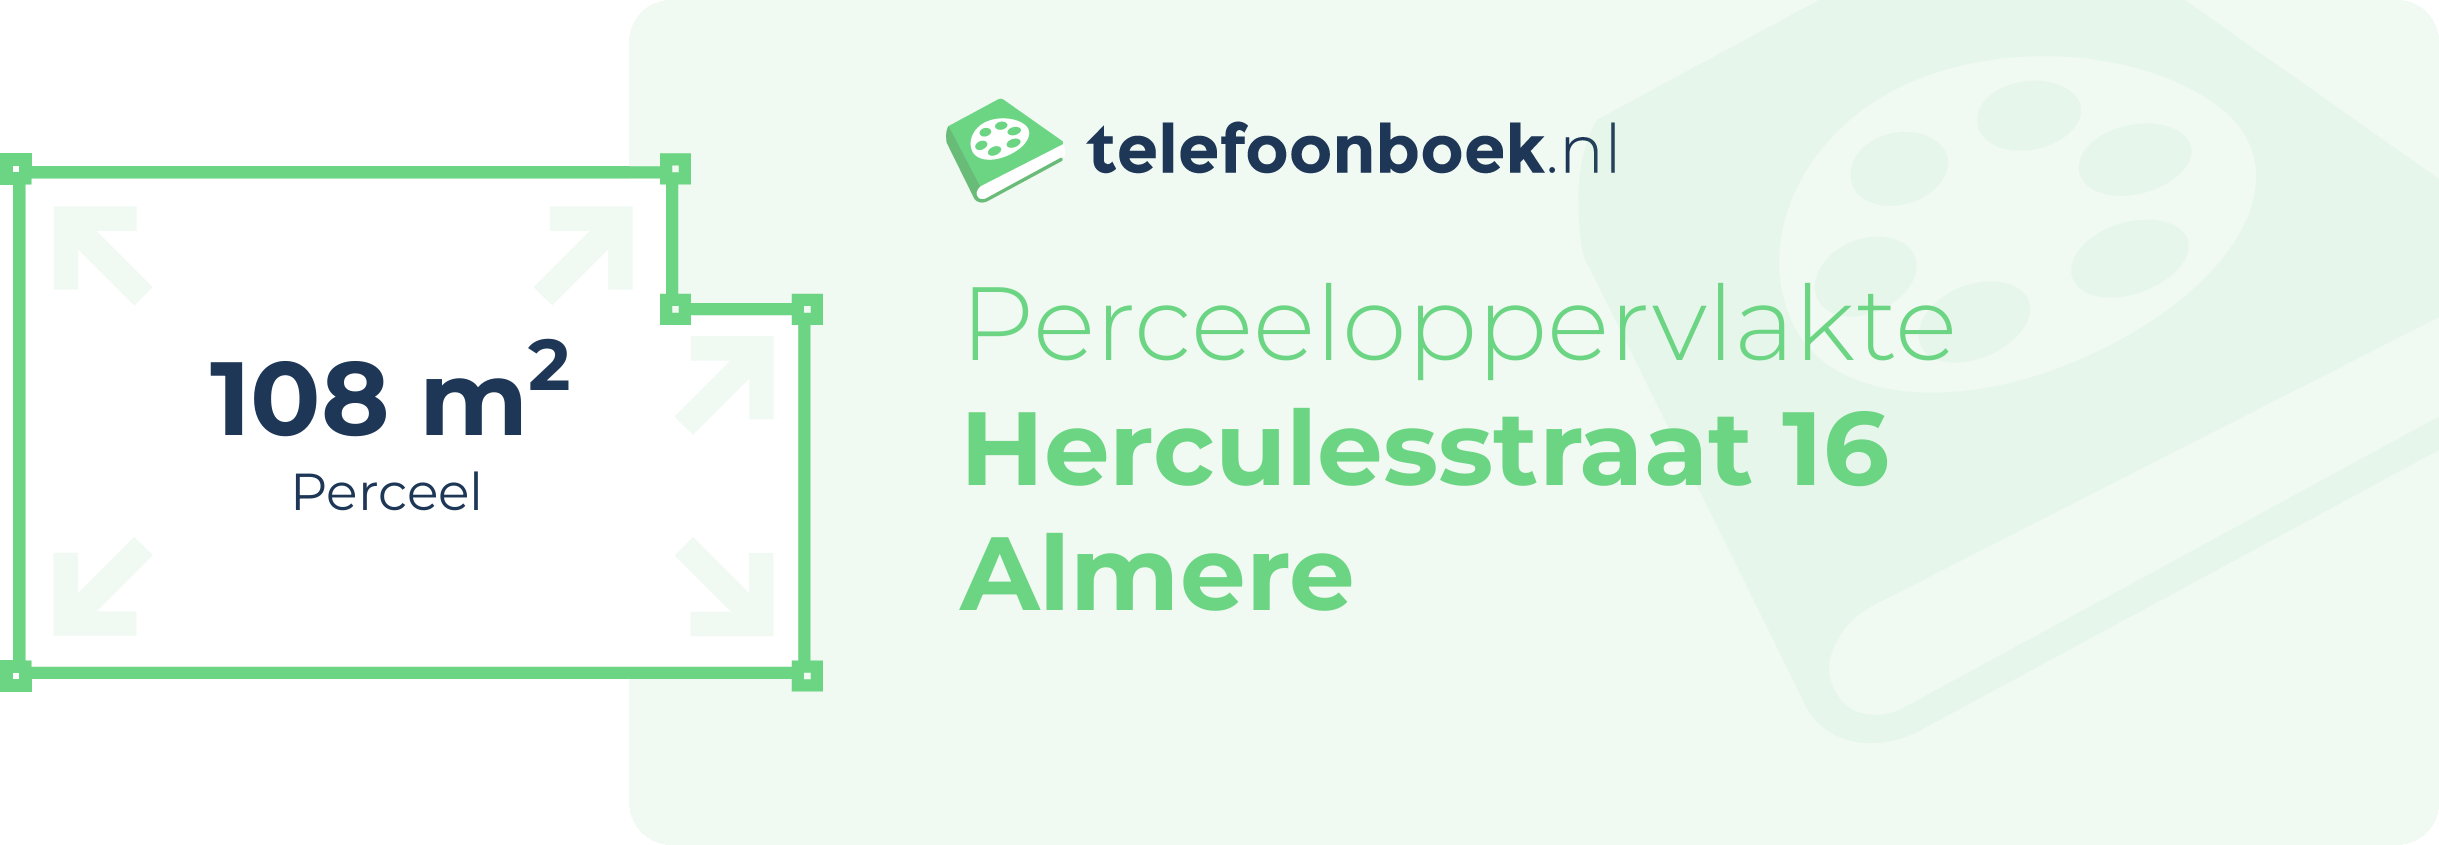 Perceeloppervlakte Herculesstraat 16 Almere